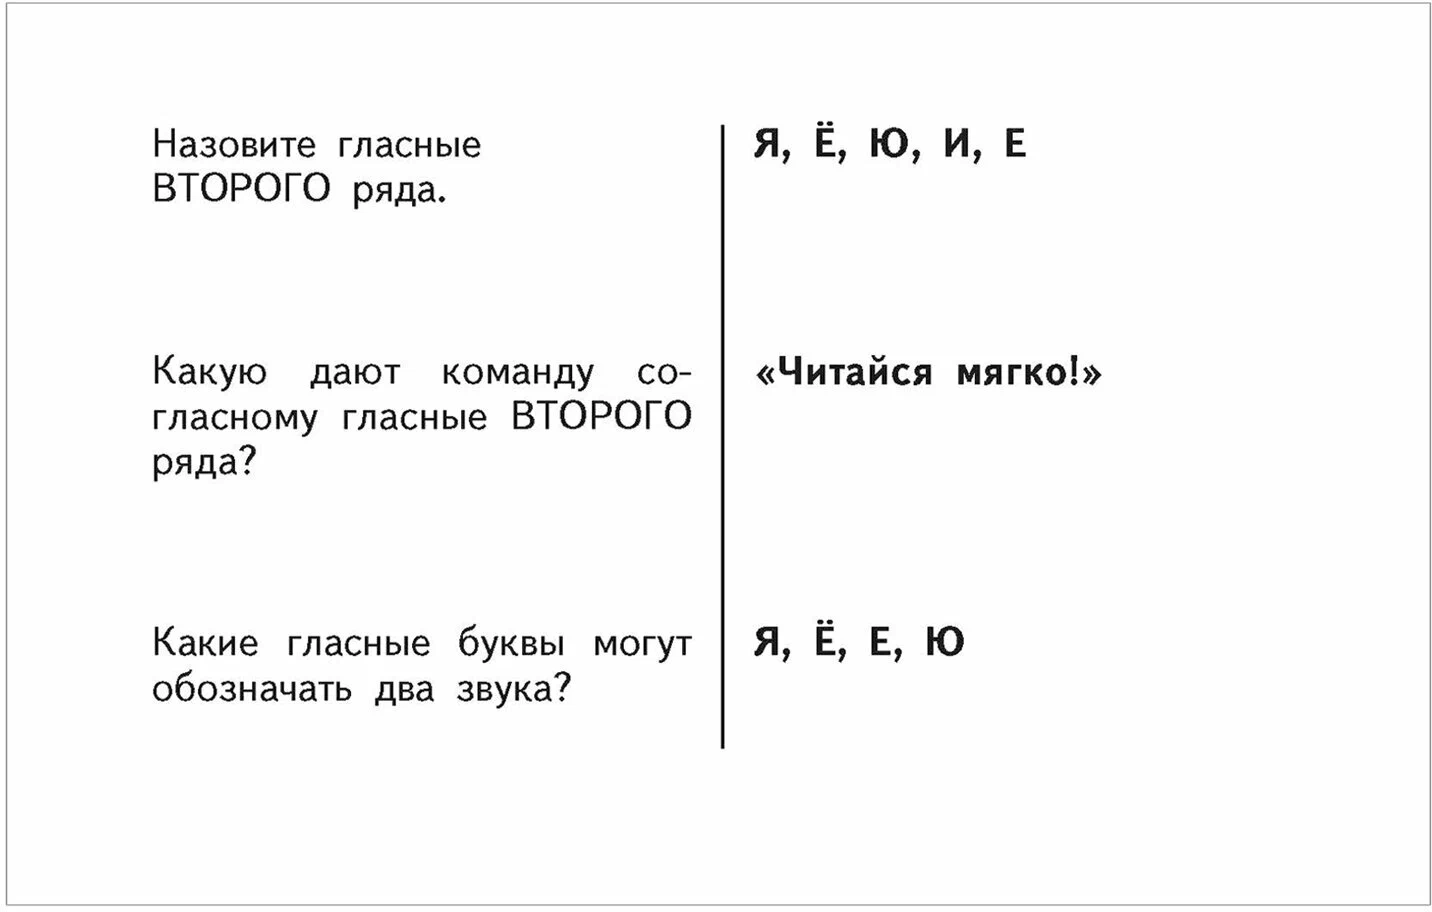 Таблицы по русскому языку для начальной школы. 1-4 классы